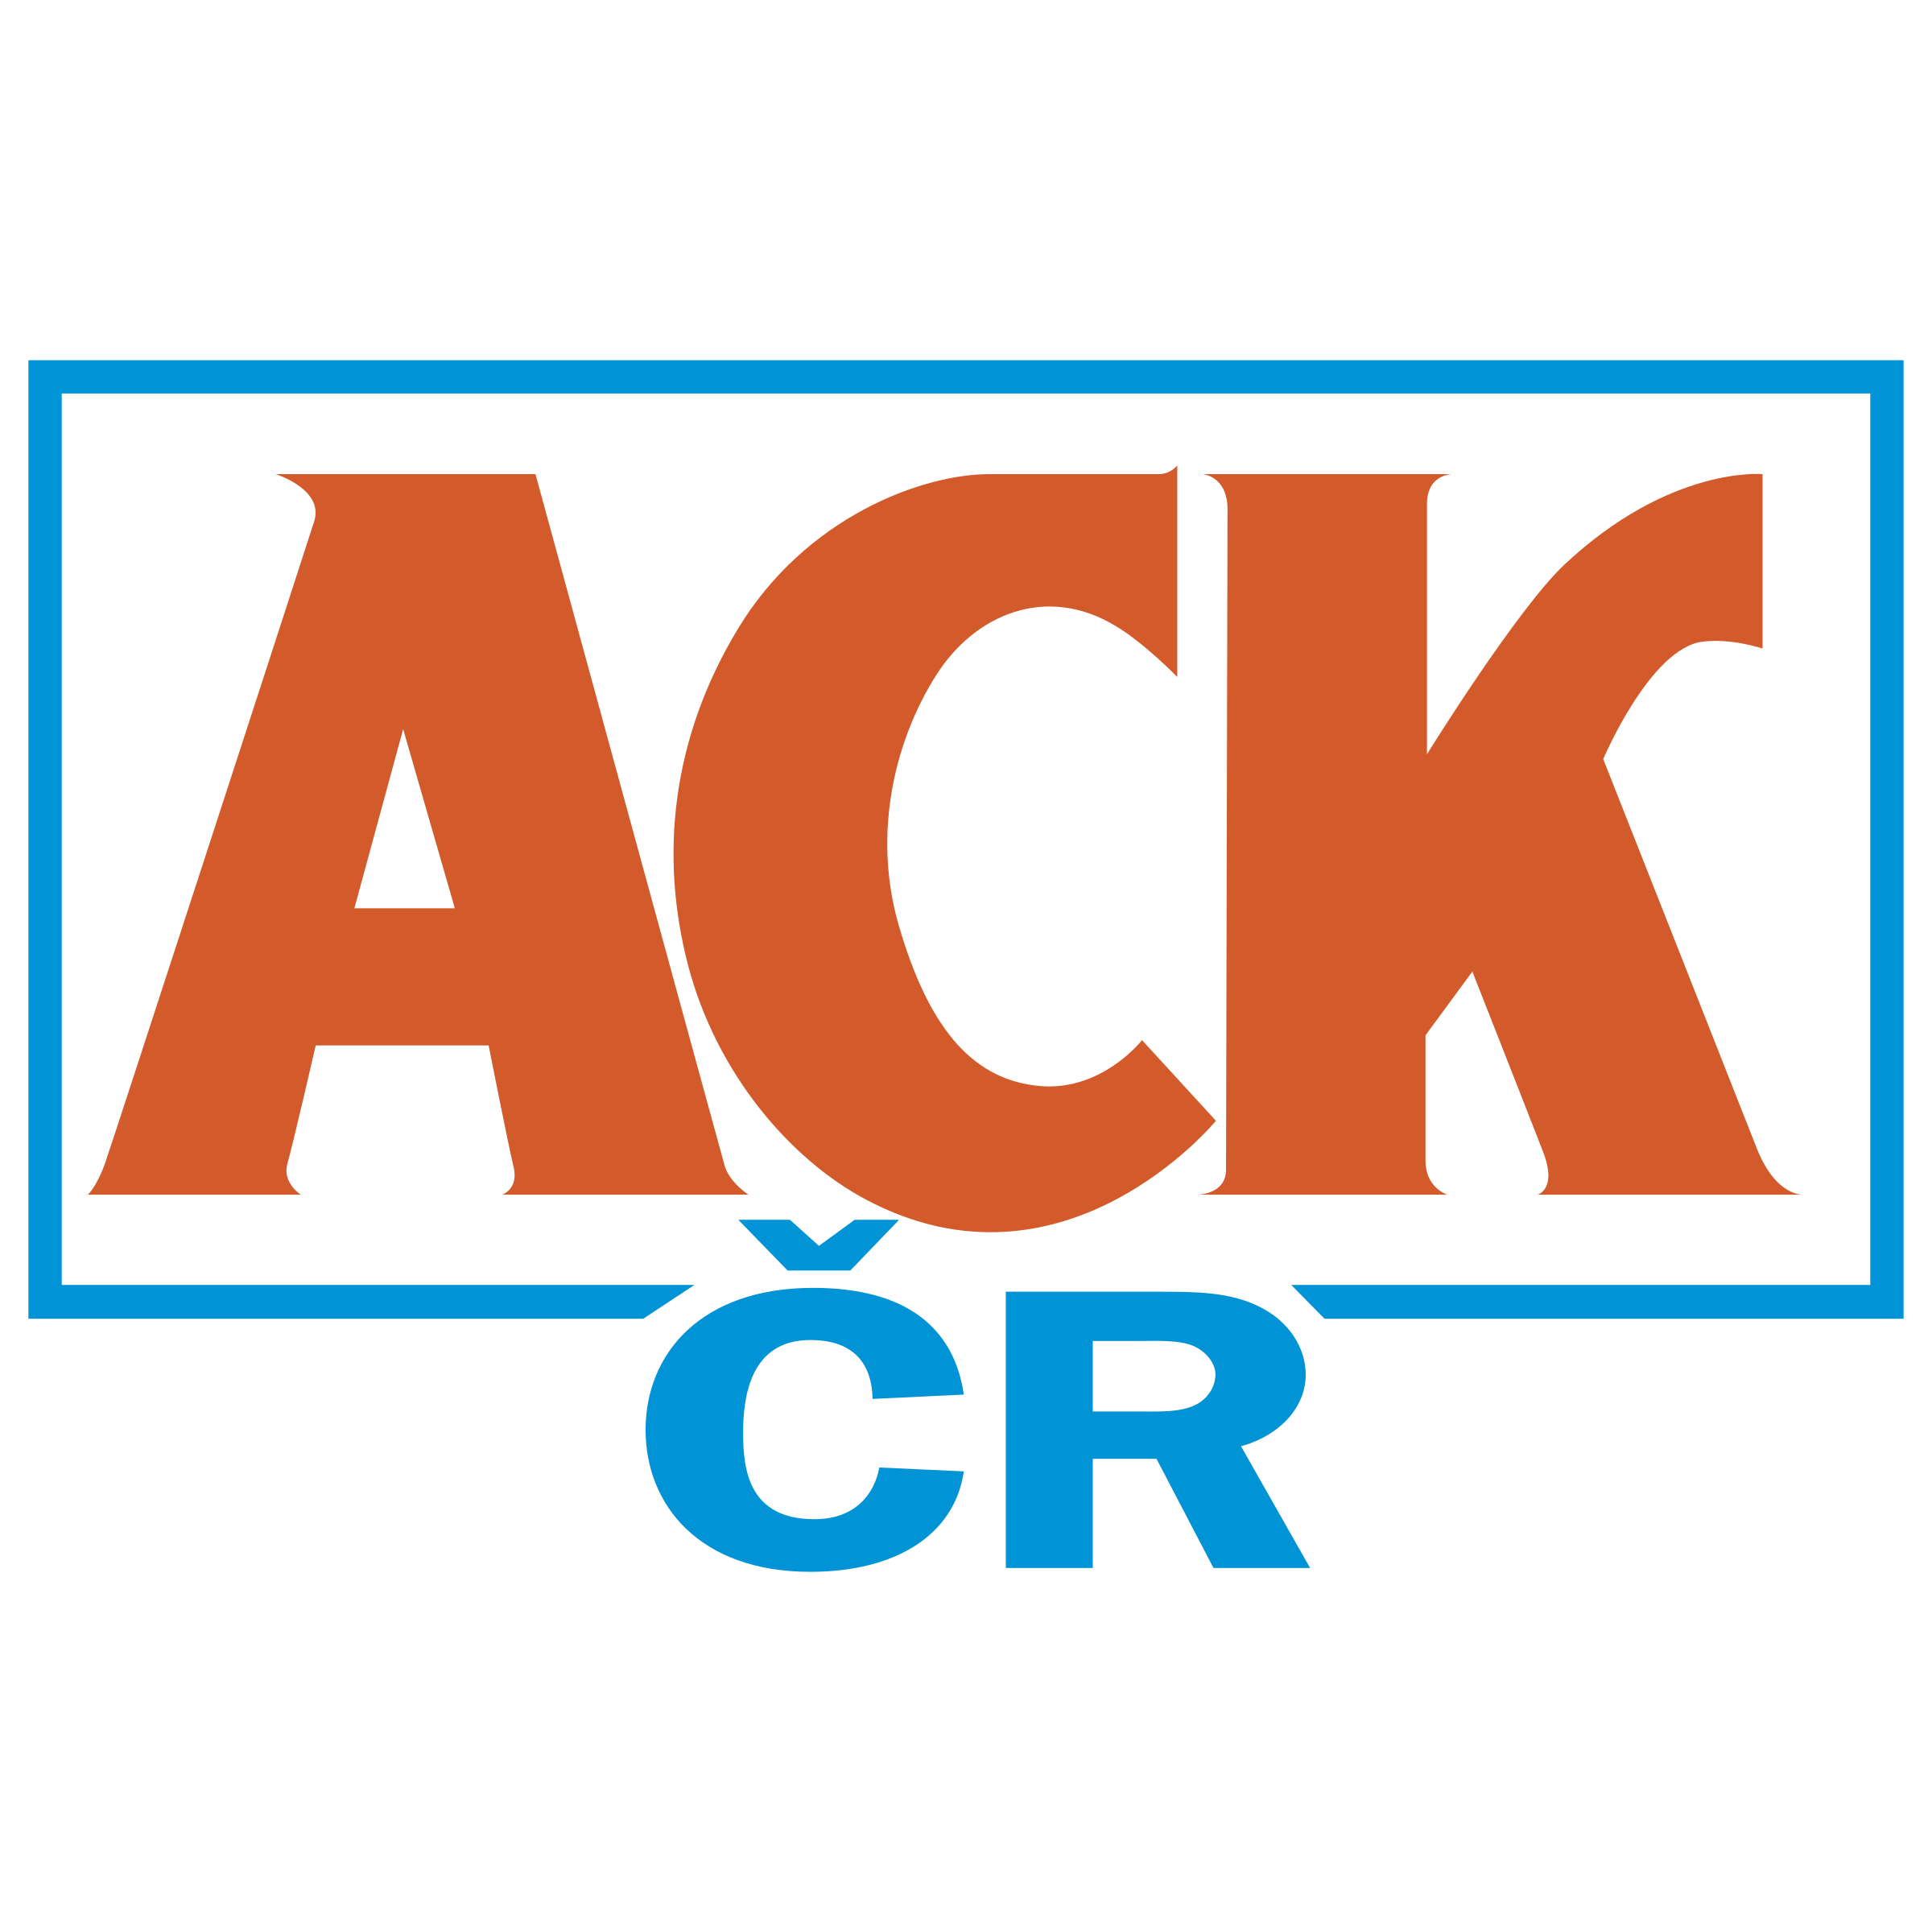 Ack Logo - ACK 01 Logo PNG Transparent & SVG Vector - Freebie Supply